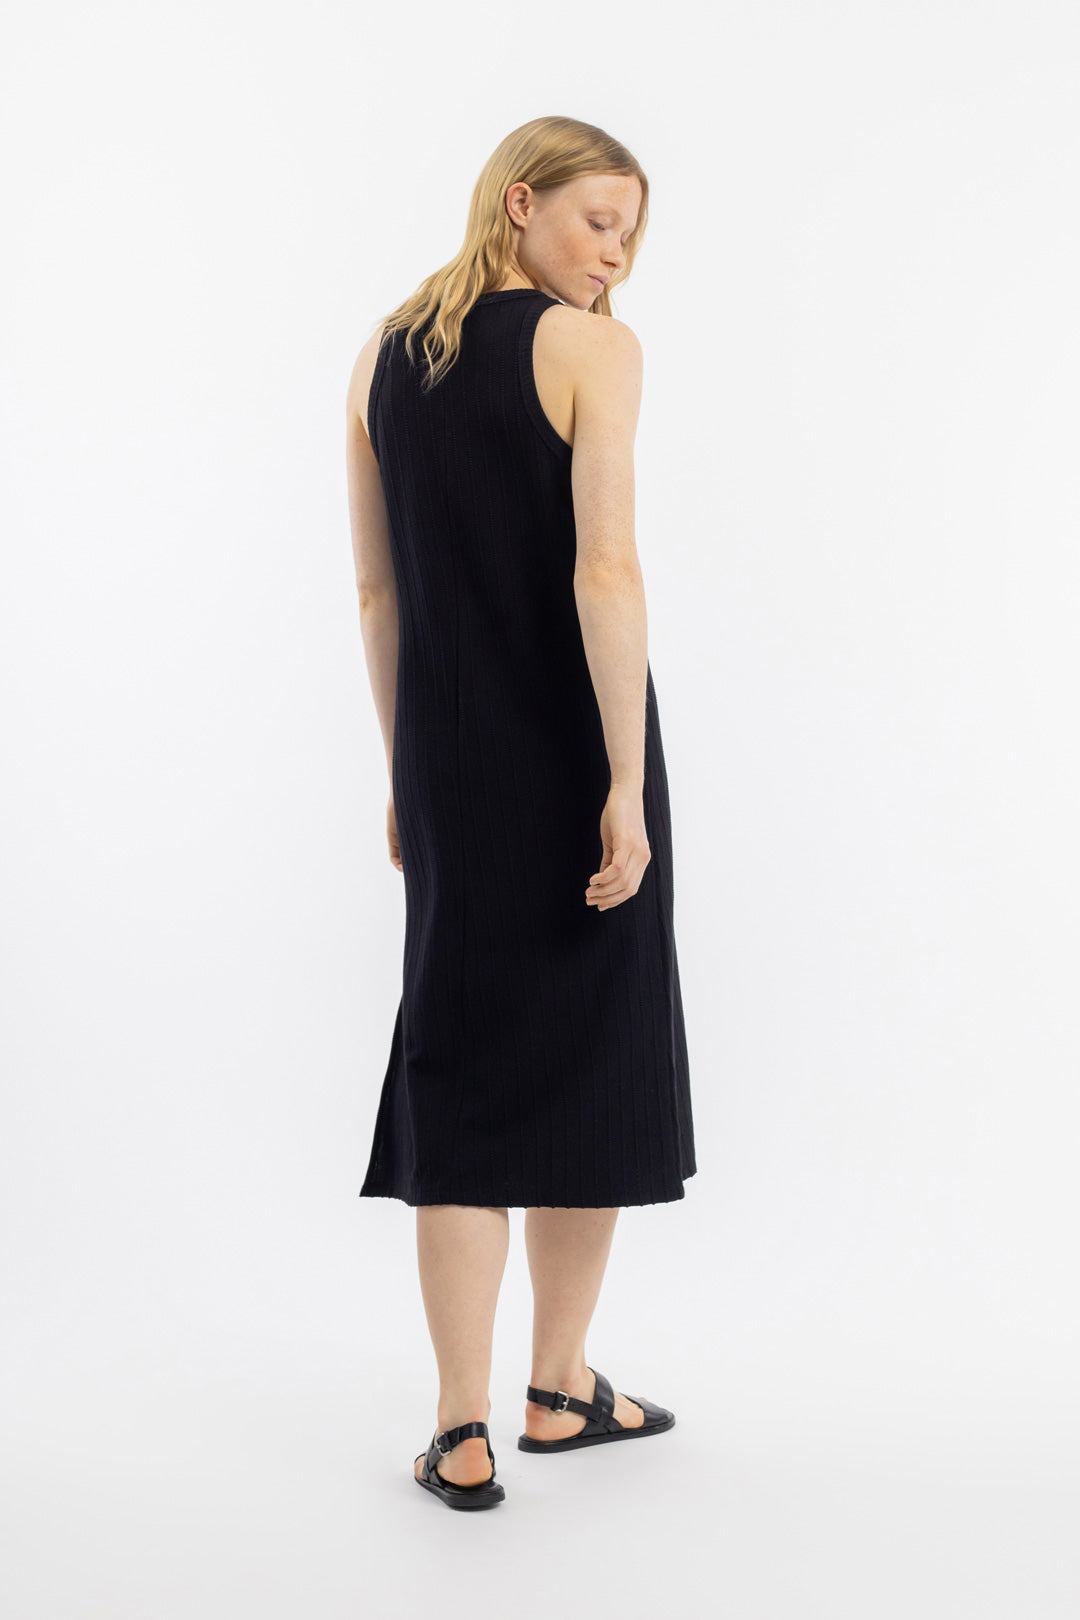 Schwarzes Strick Kleid aus 100% Bio-Baumwolle von Rotholz